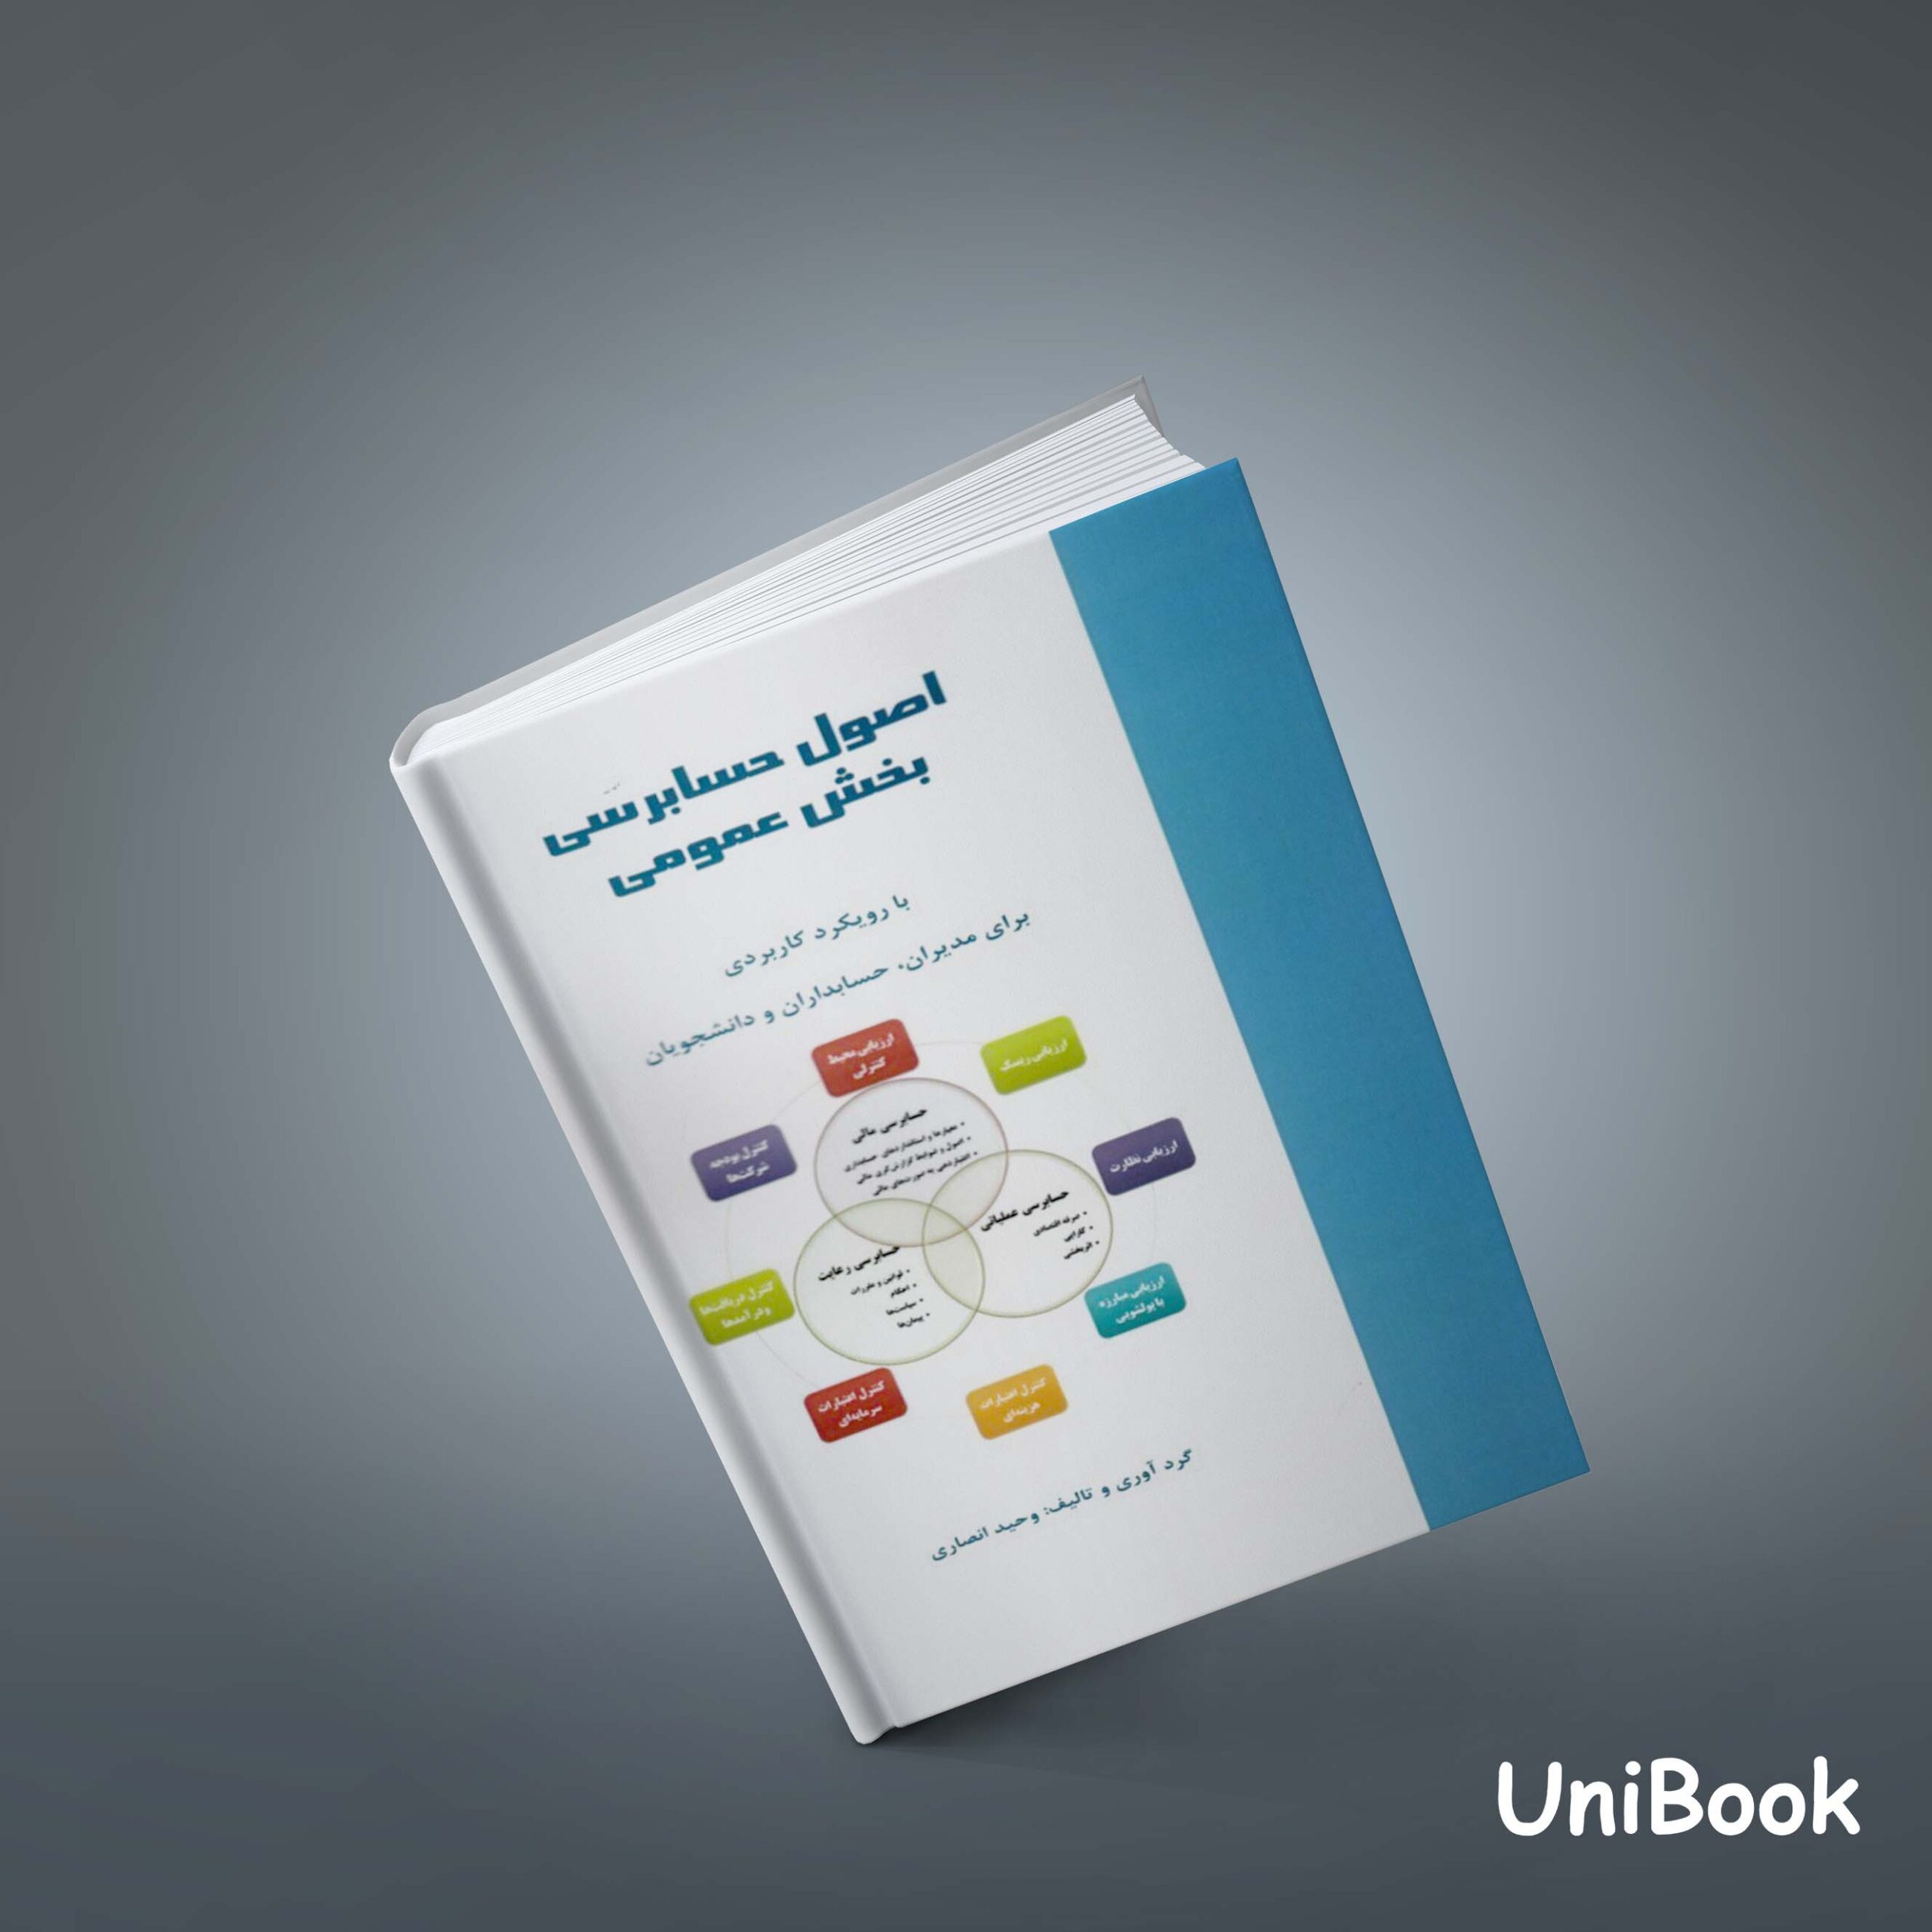 کتاب اصول حسابرسی بخش عمومی: با رویکرد کاربردی برای مدیران، حسابداران و دانشجویان